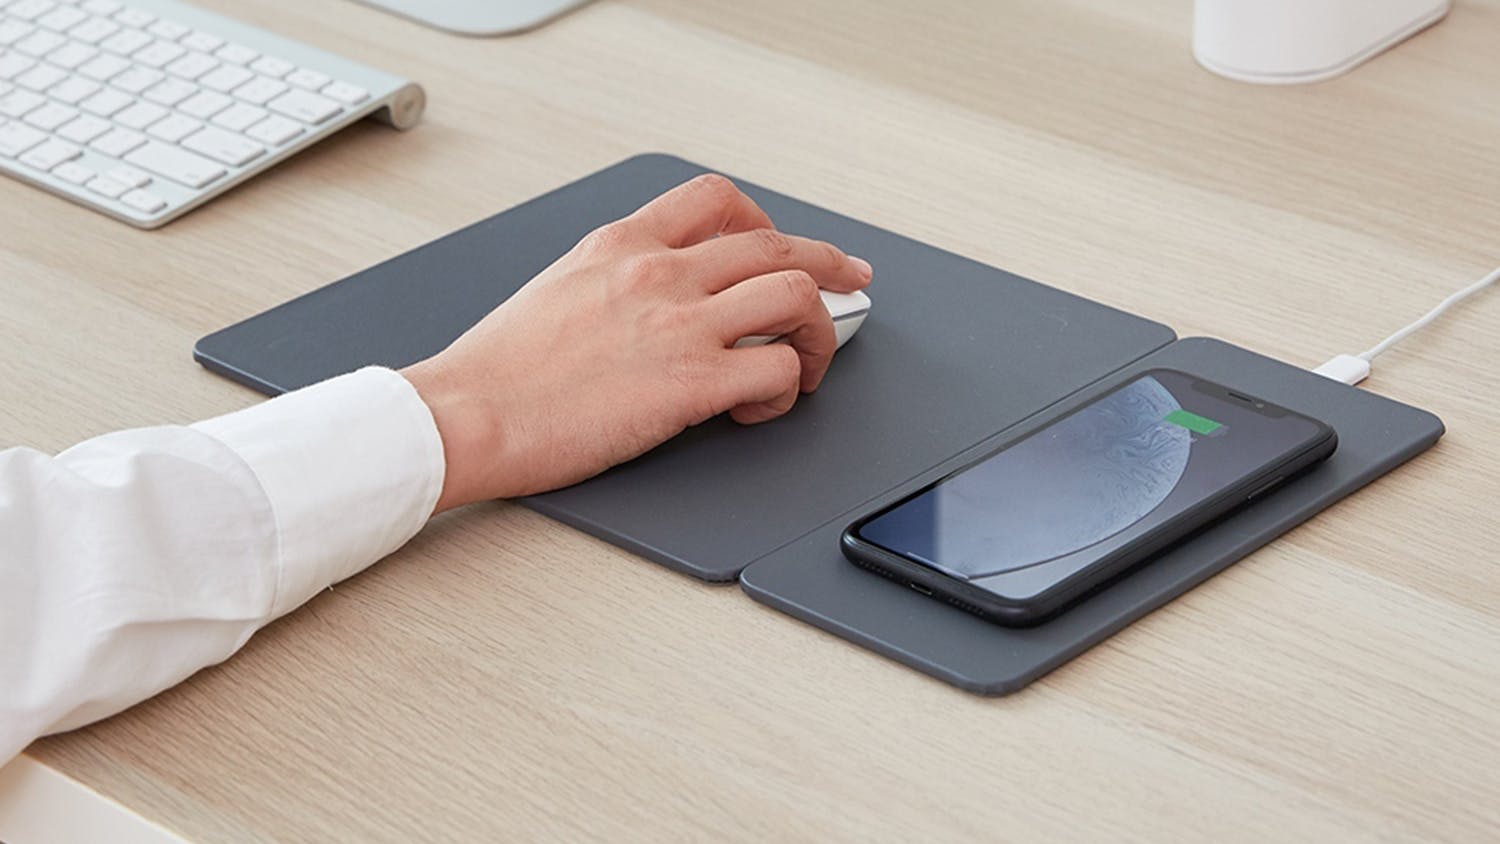 Pout HANDS 3 Split Detachable Wireless Charging Mouse Pad - Grey